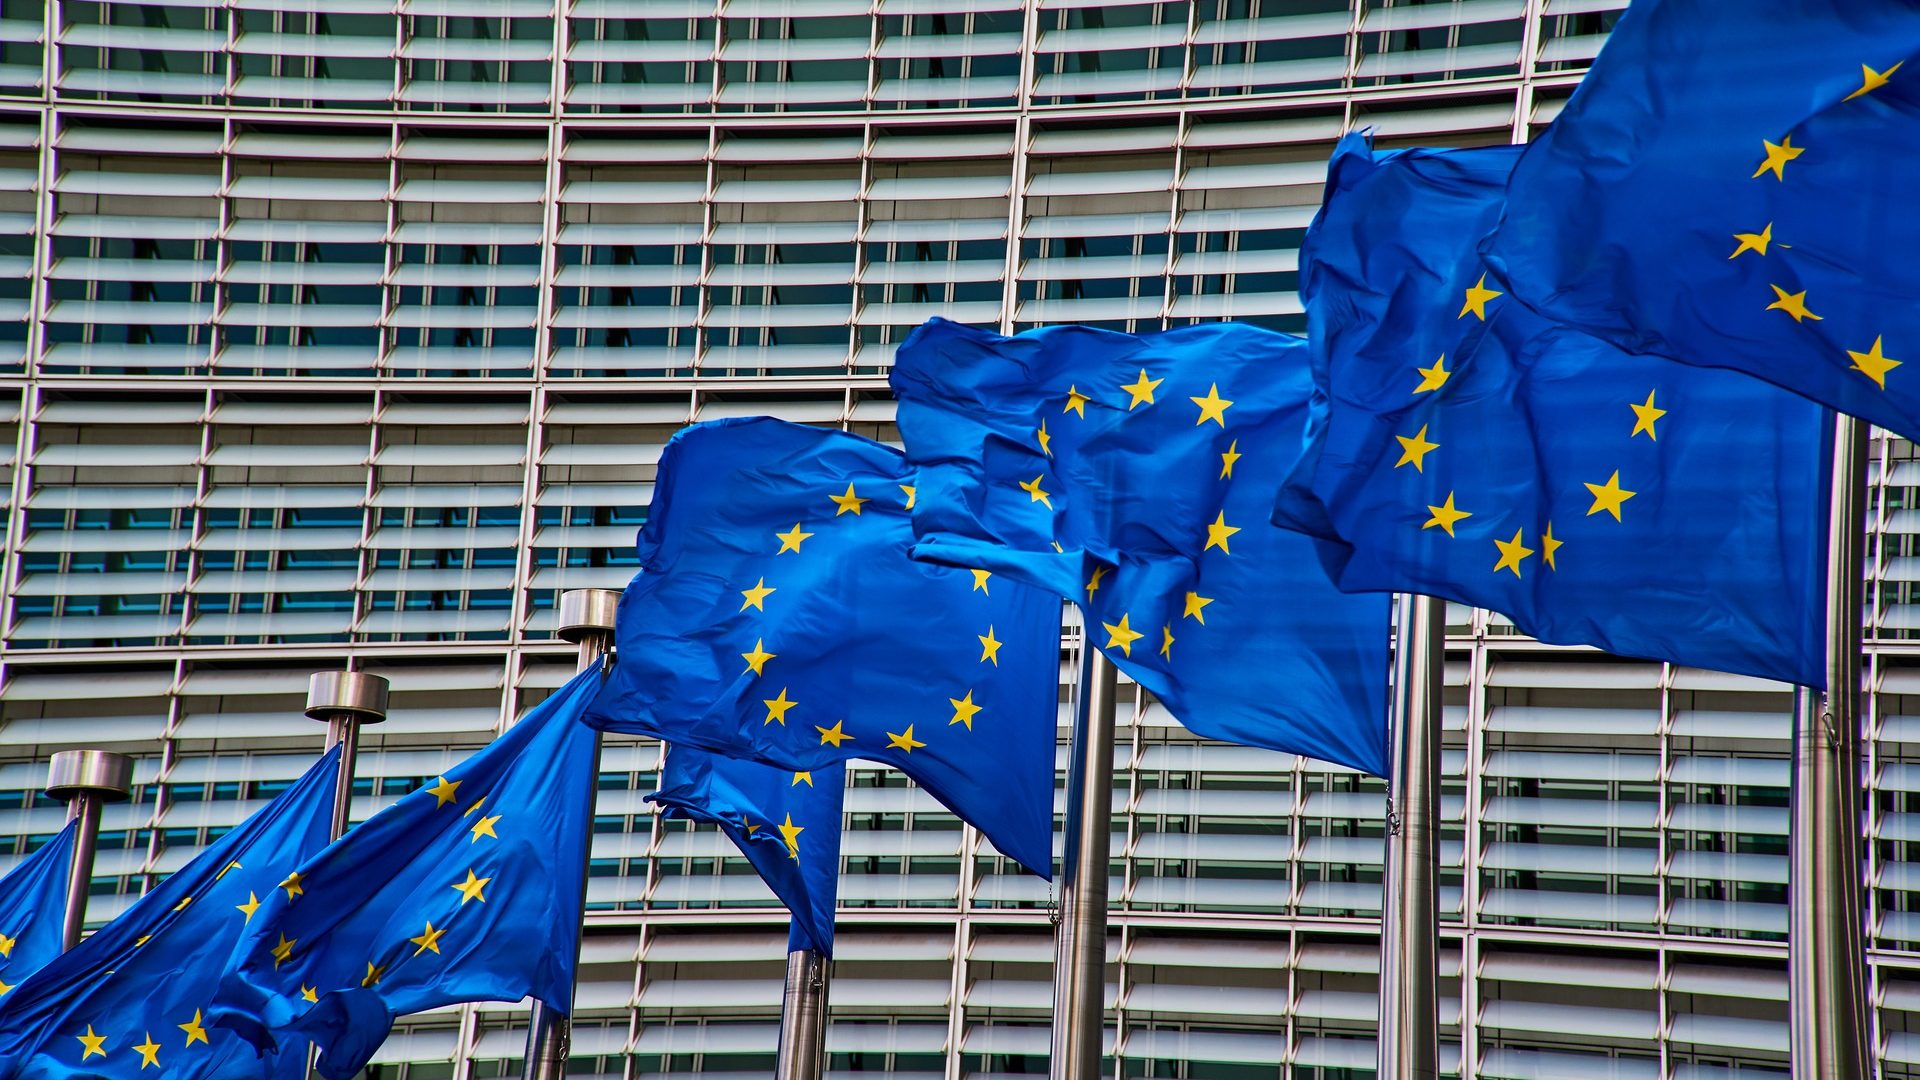 Europaflaggen wehen vor dem Europäischen Parlament in Brüssel. Die EU ist eine beliebte Adressatin für Petitionen.